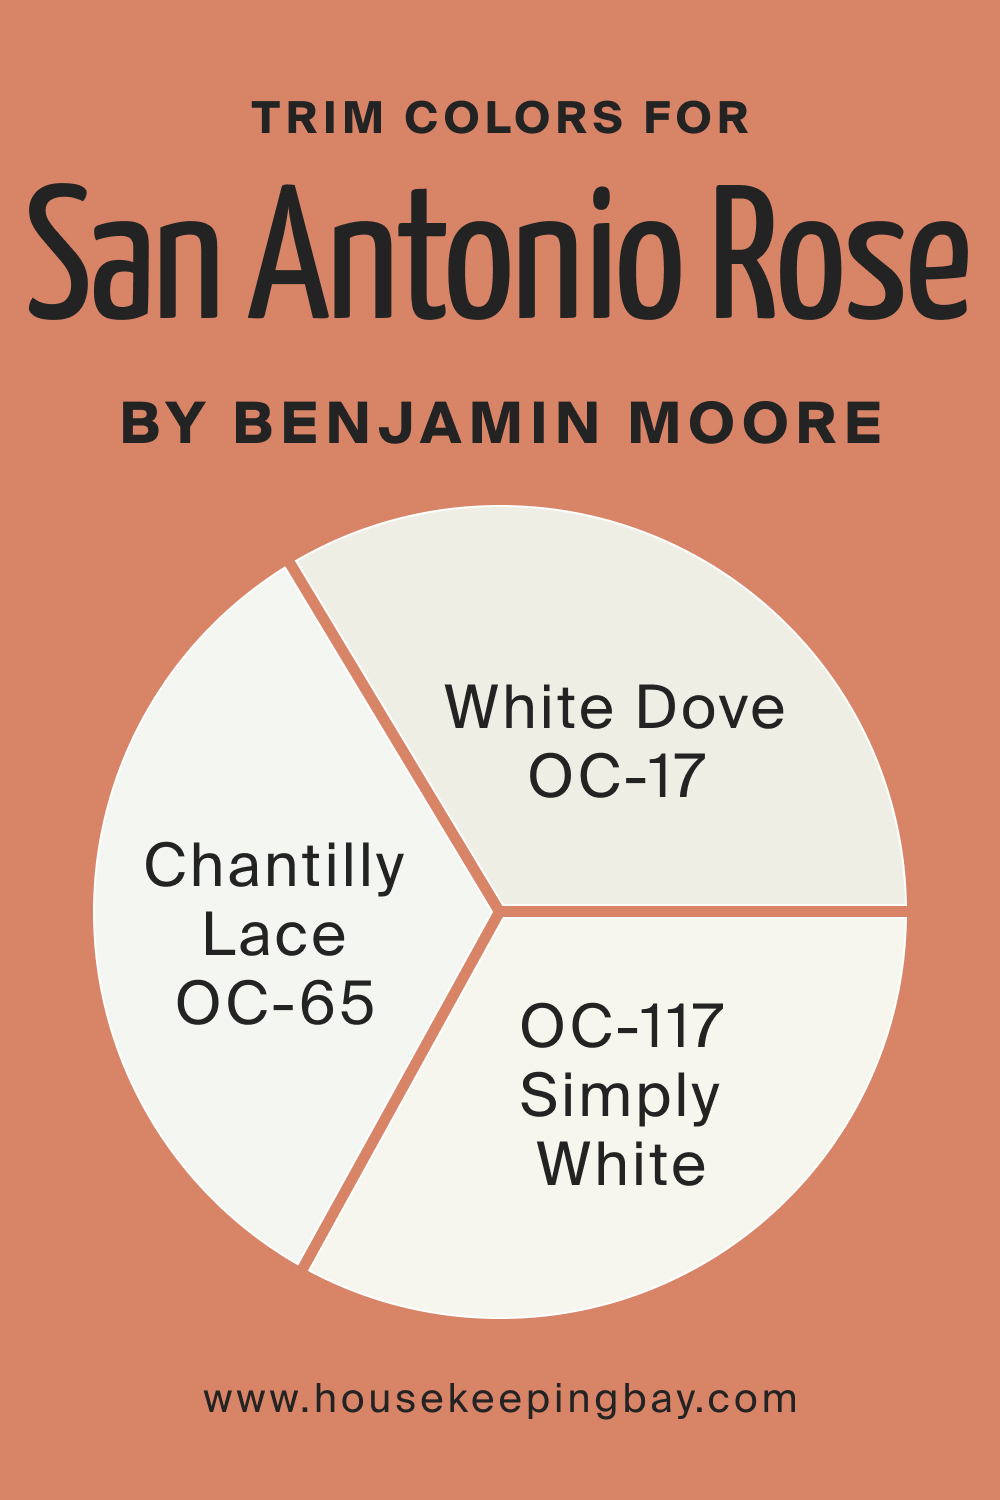 Trim Colors for San Antonio Rose 027 by Benjamin Moore